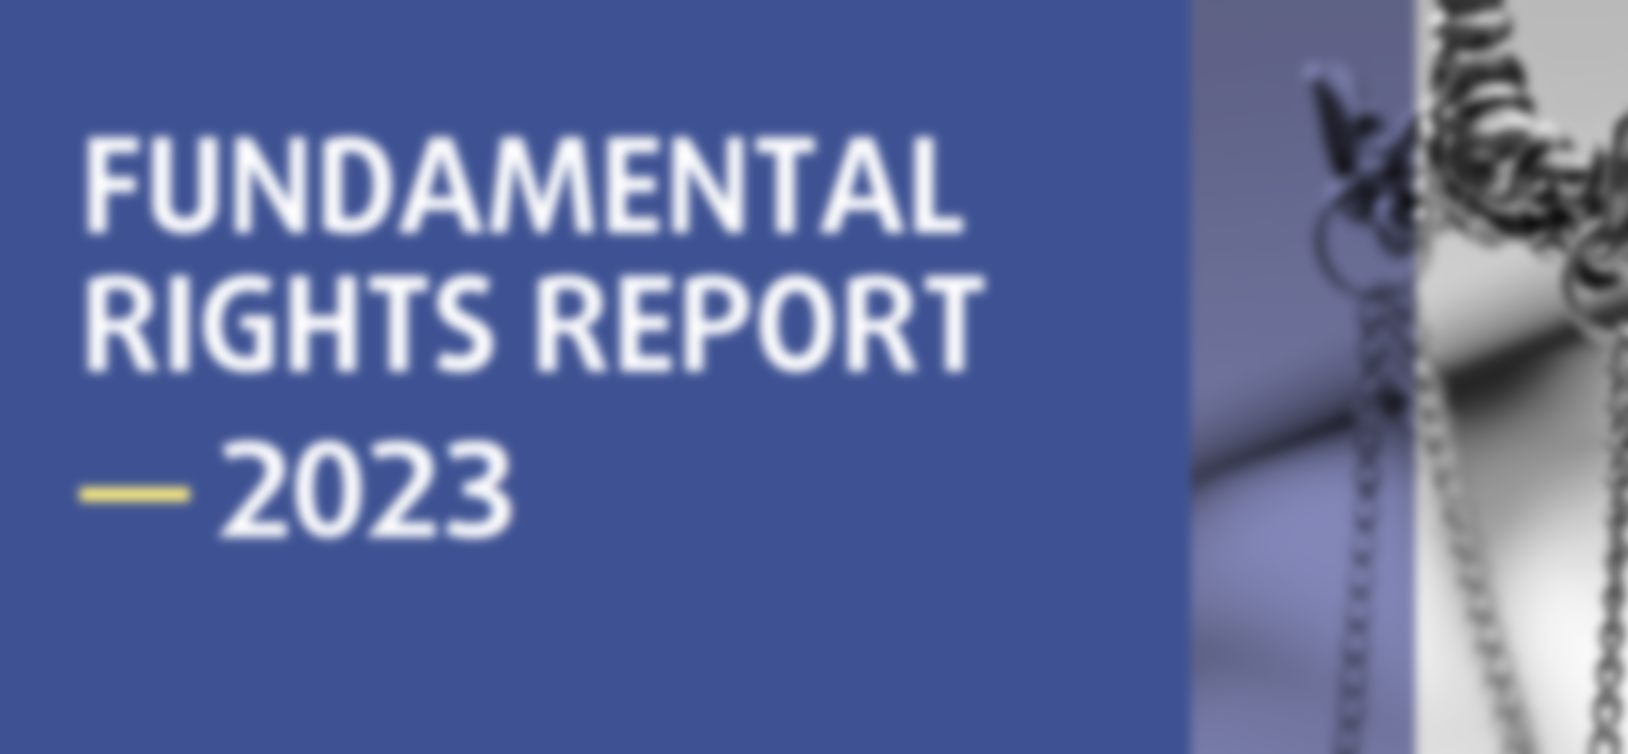 Contributo do OPJ para o Relatório dos Direitos Fundamentais 2023 da FRA